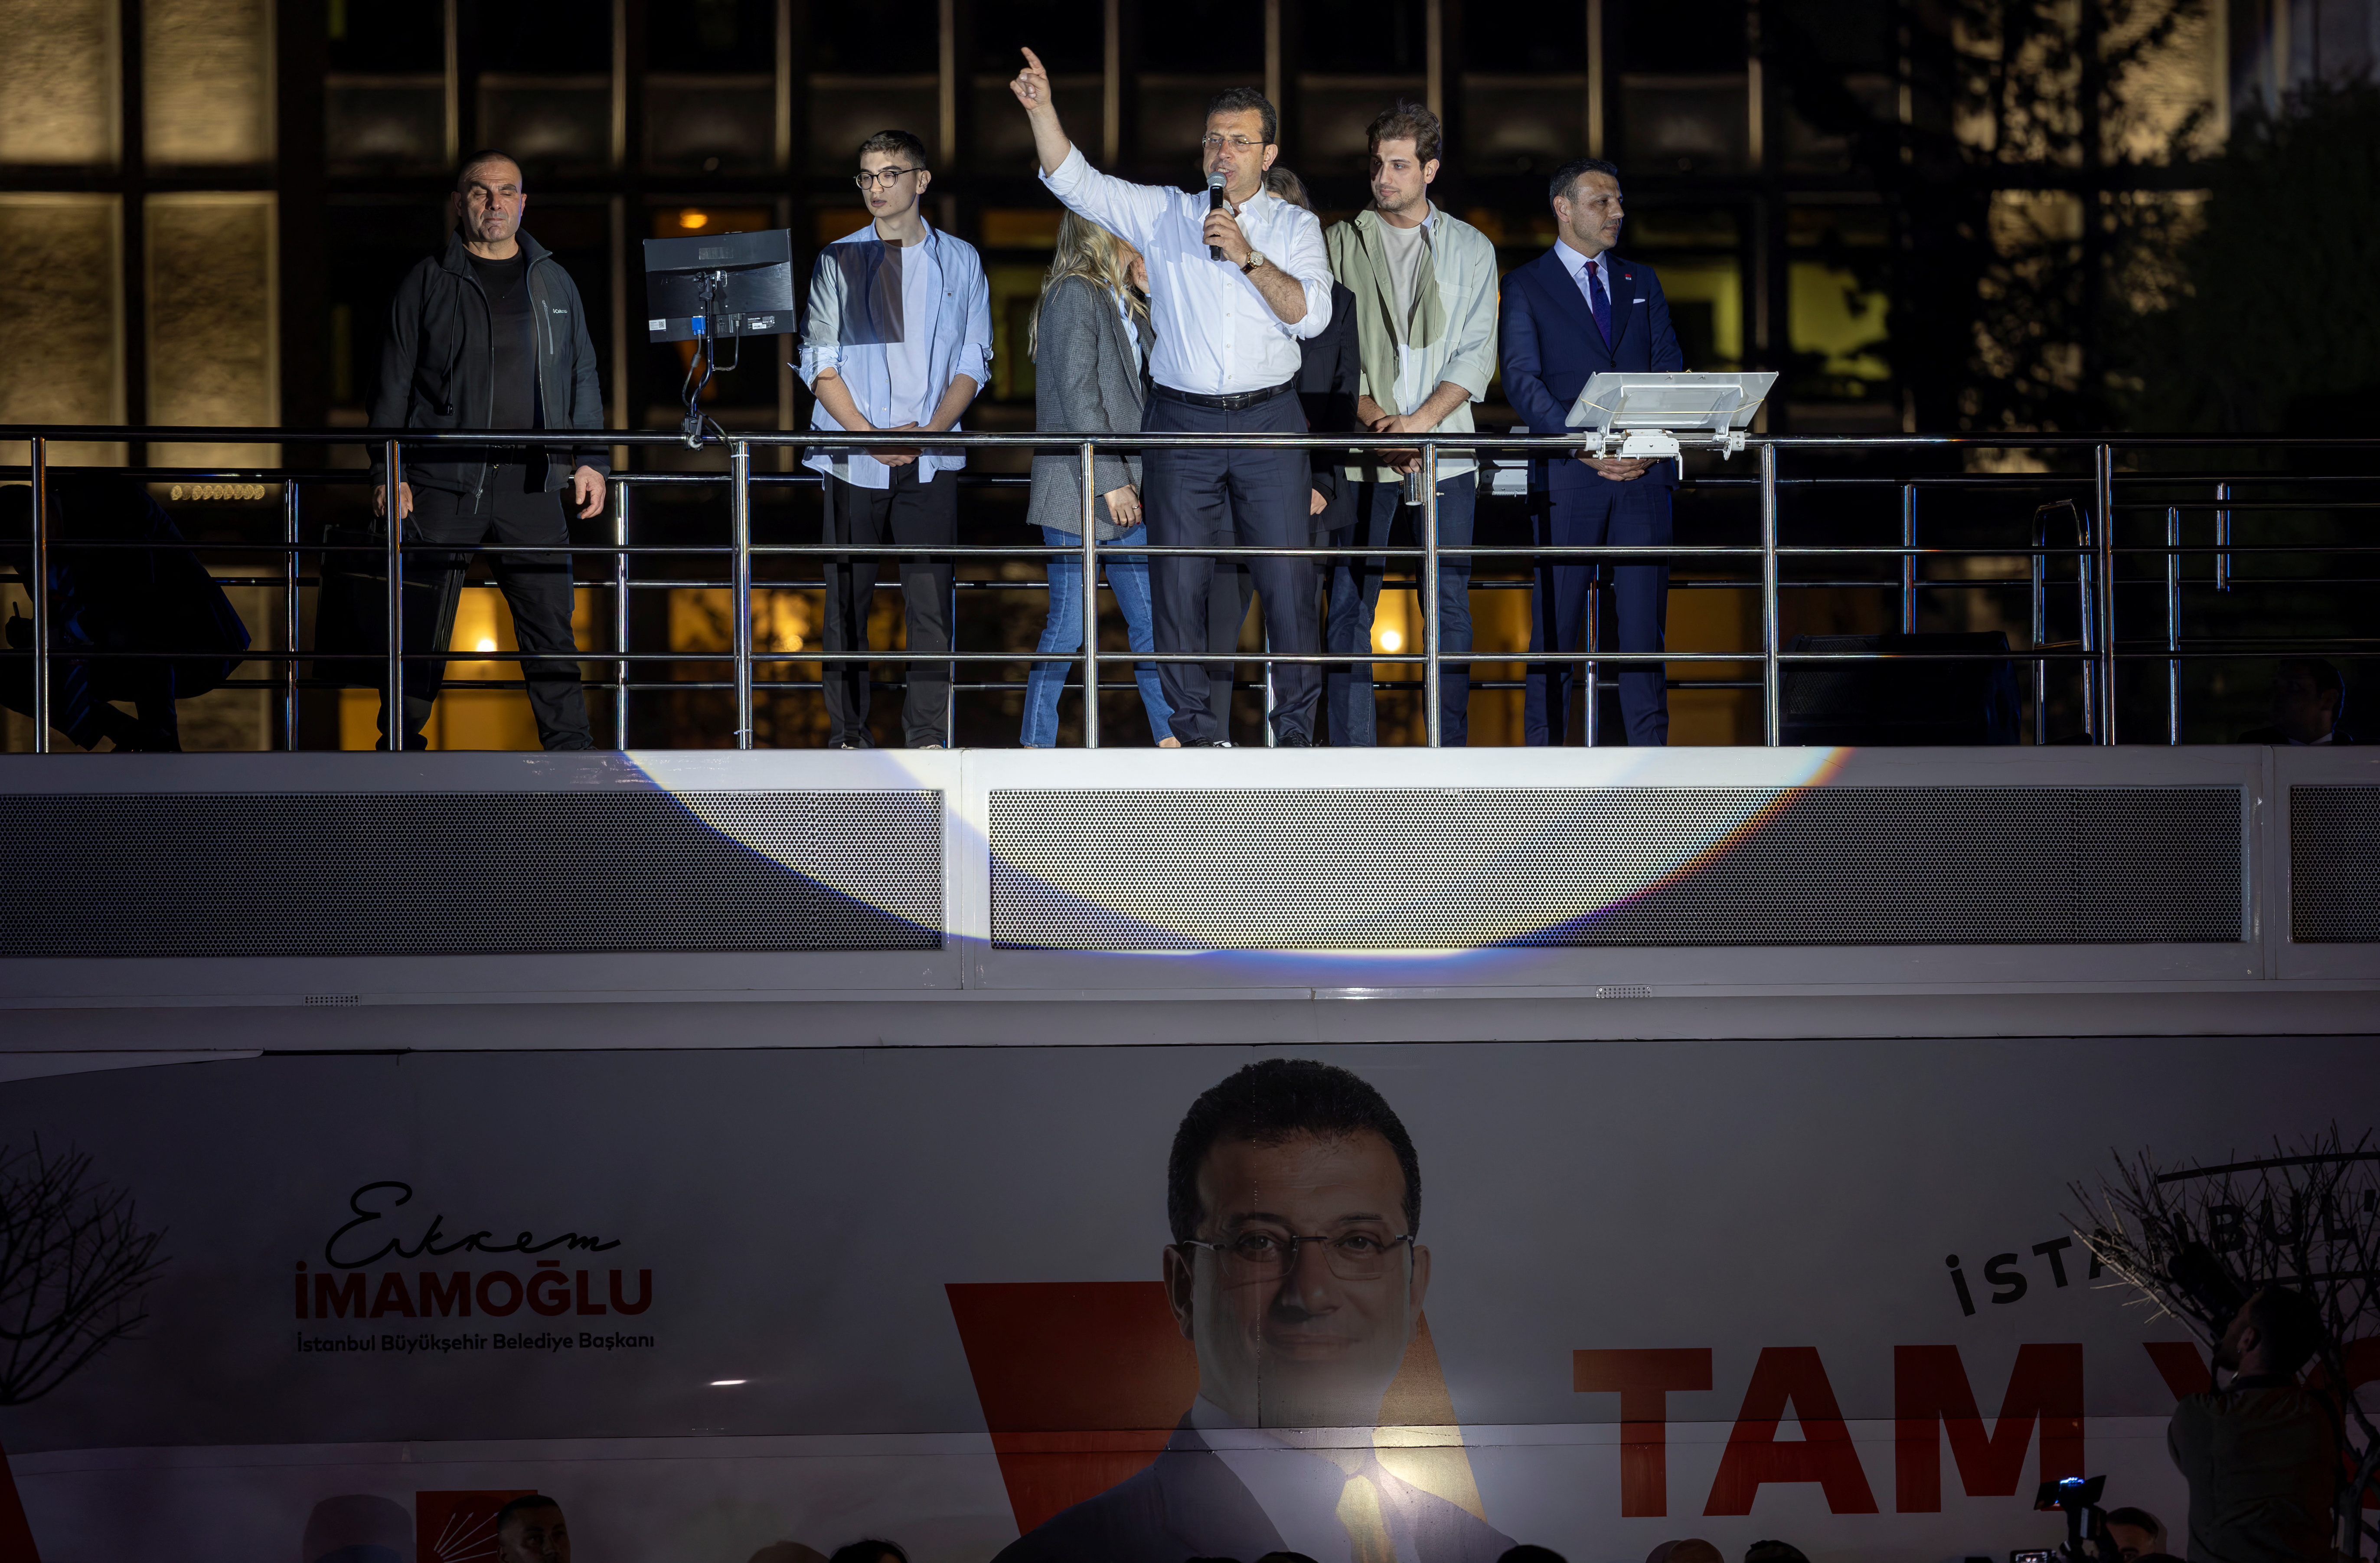 εκλογές στην Τουρκία - Ιμάμογλου